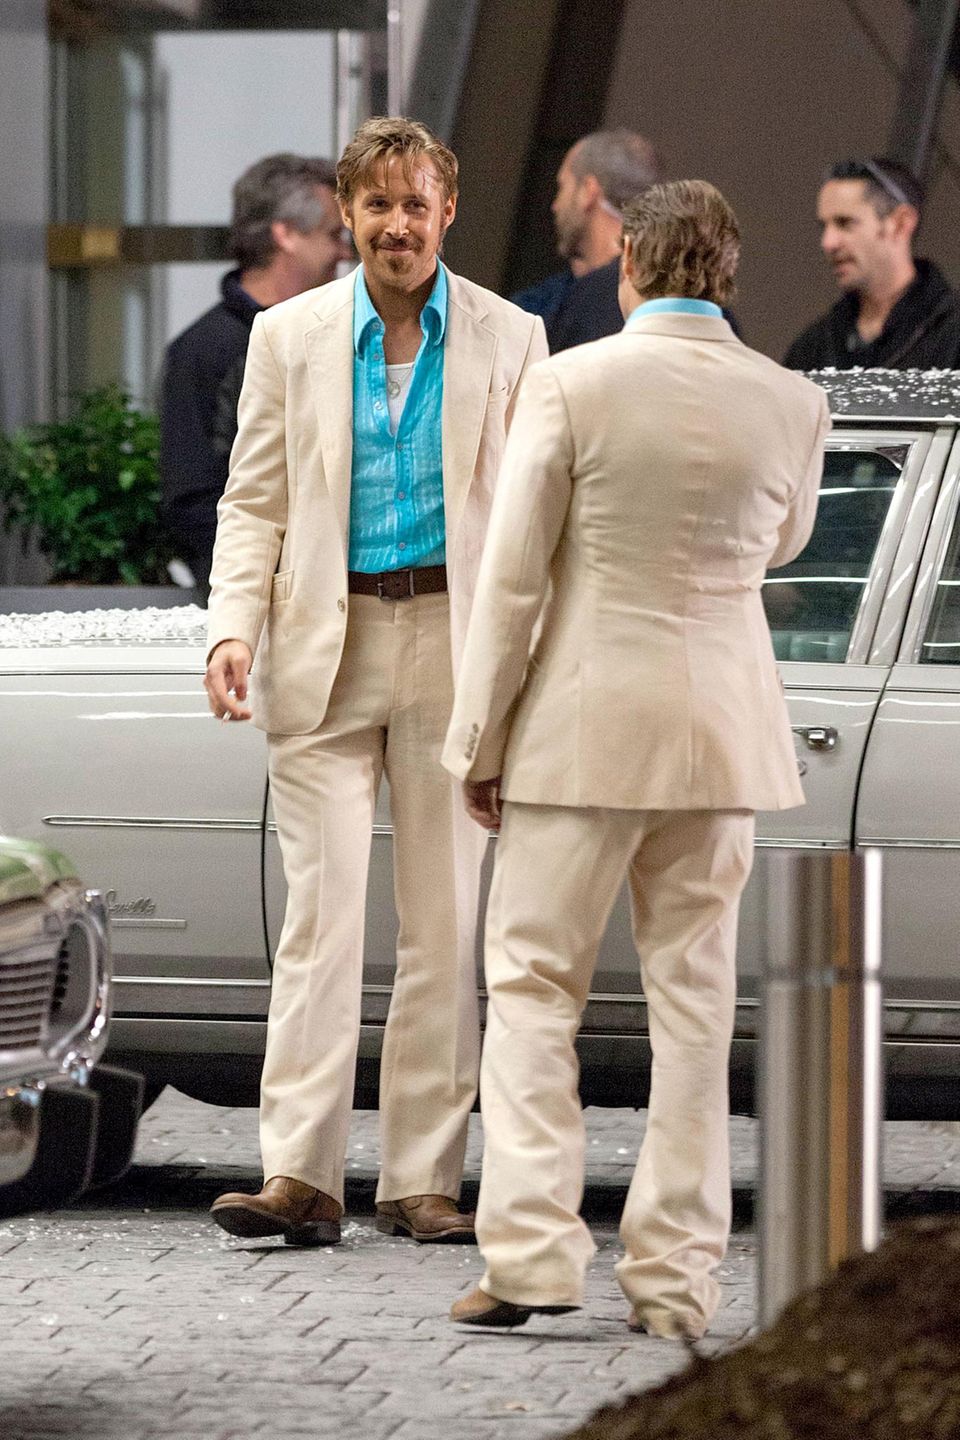 Bei den Dreharbeiten für den Film "The Nice Guys" in Atlanta steht Ryan Gosling ein Stunt Double zur Seite.